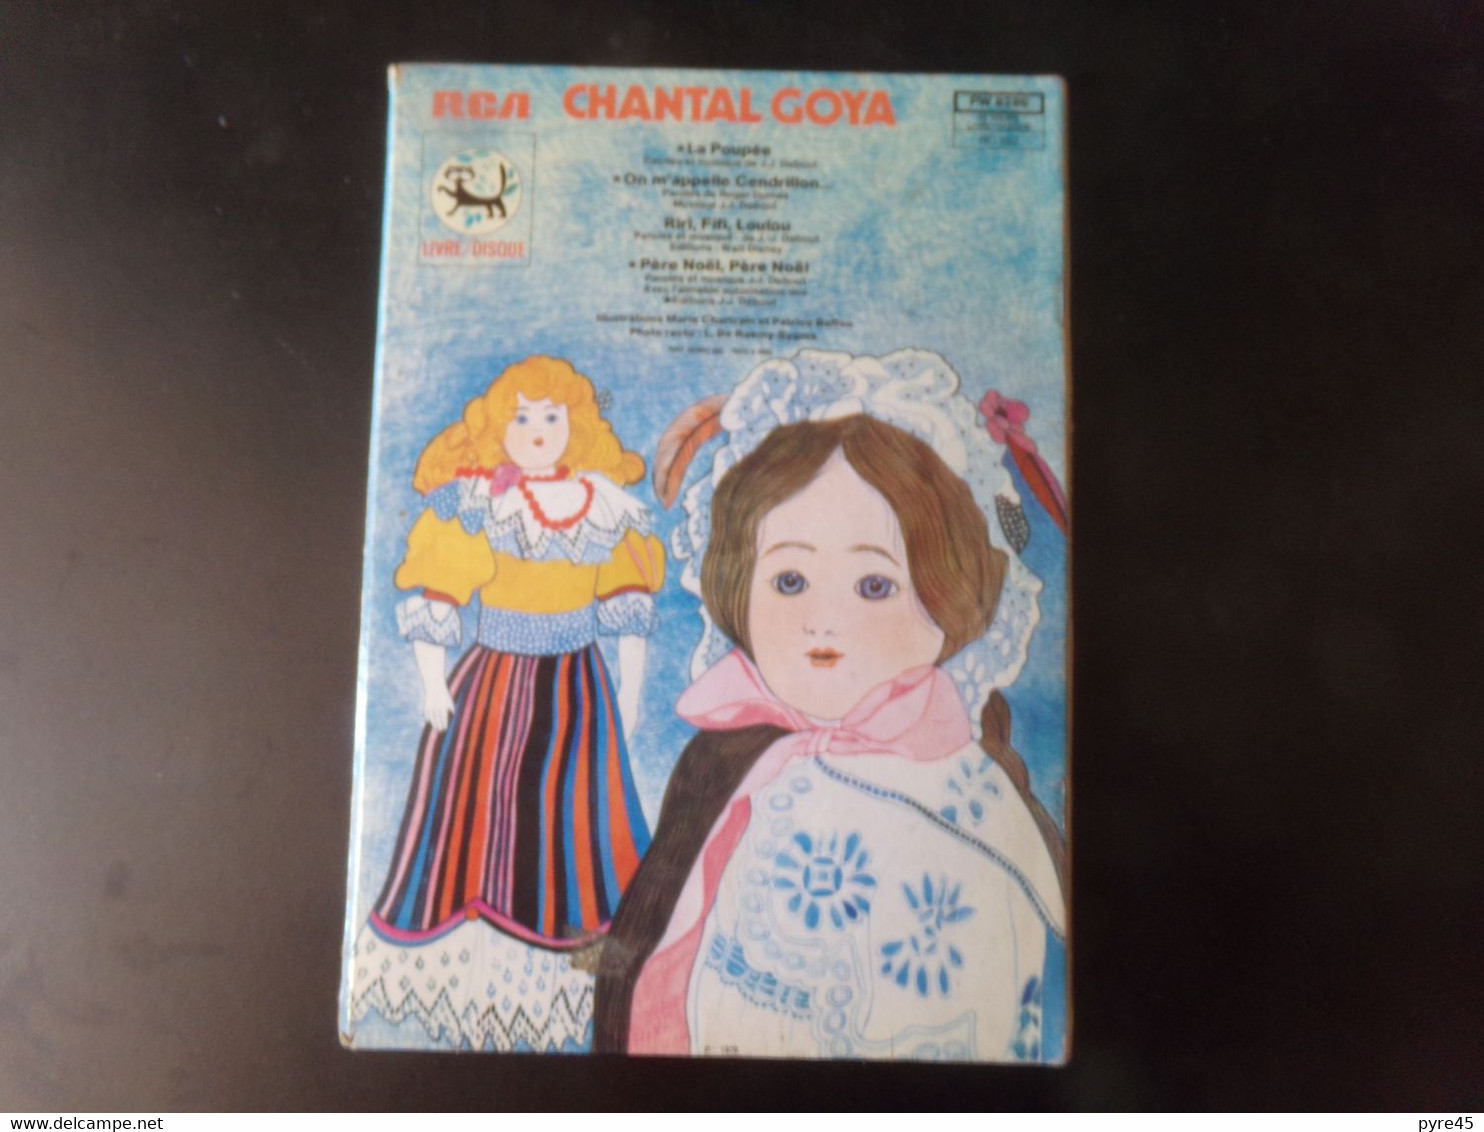 Livre disque " Chante avec Chantal Goya " La poupée Riri, Fifi, Loulou...